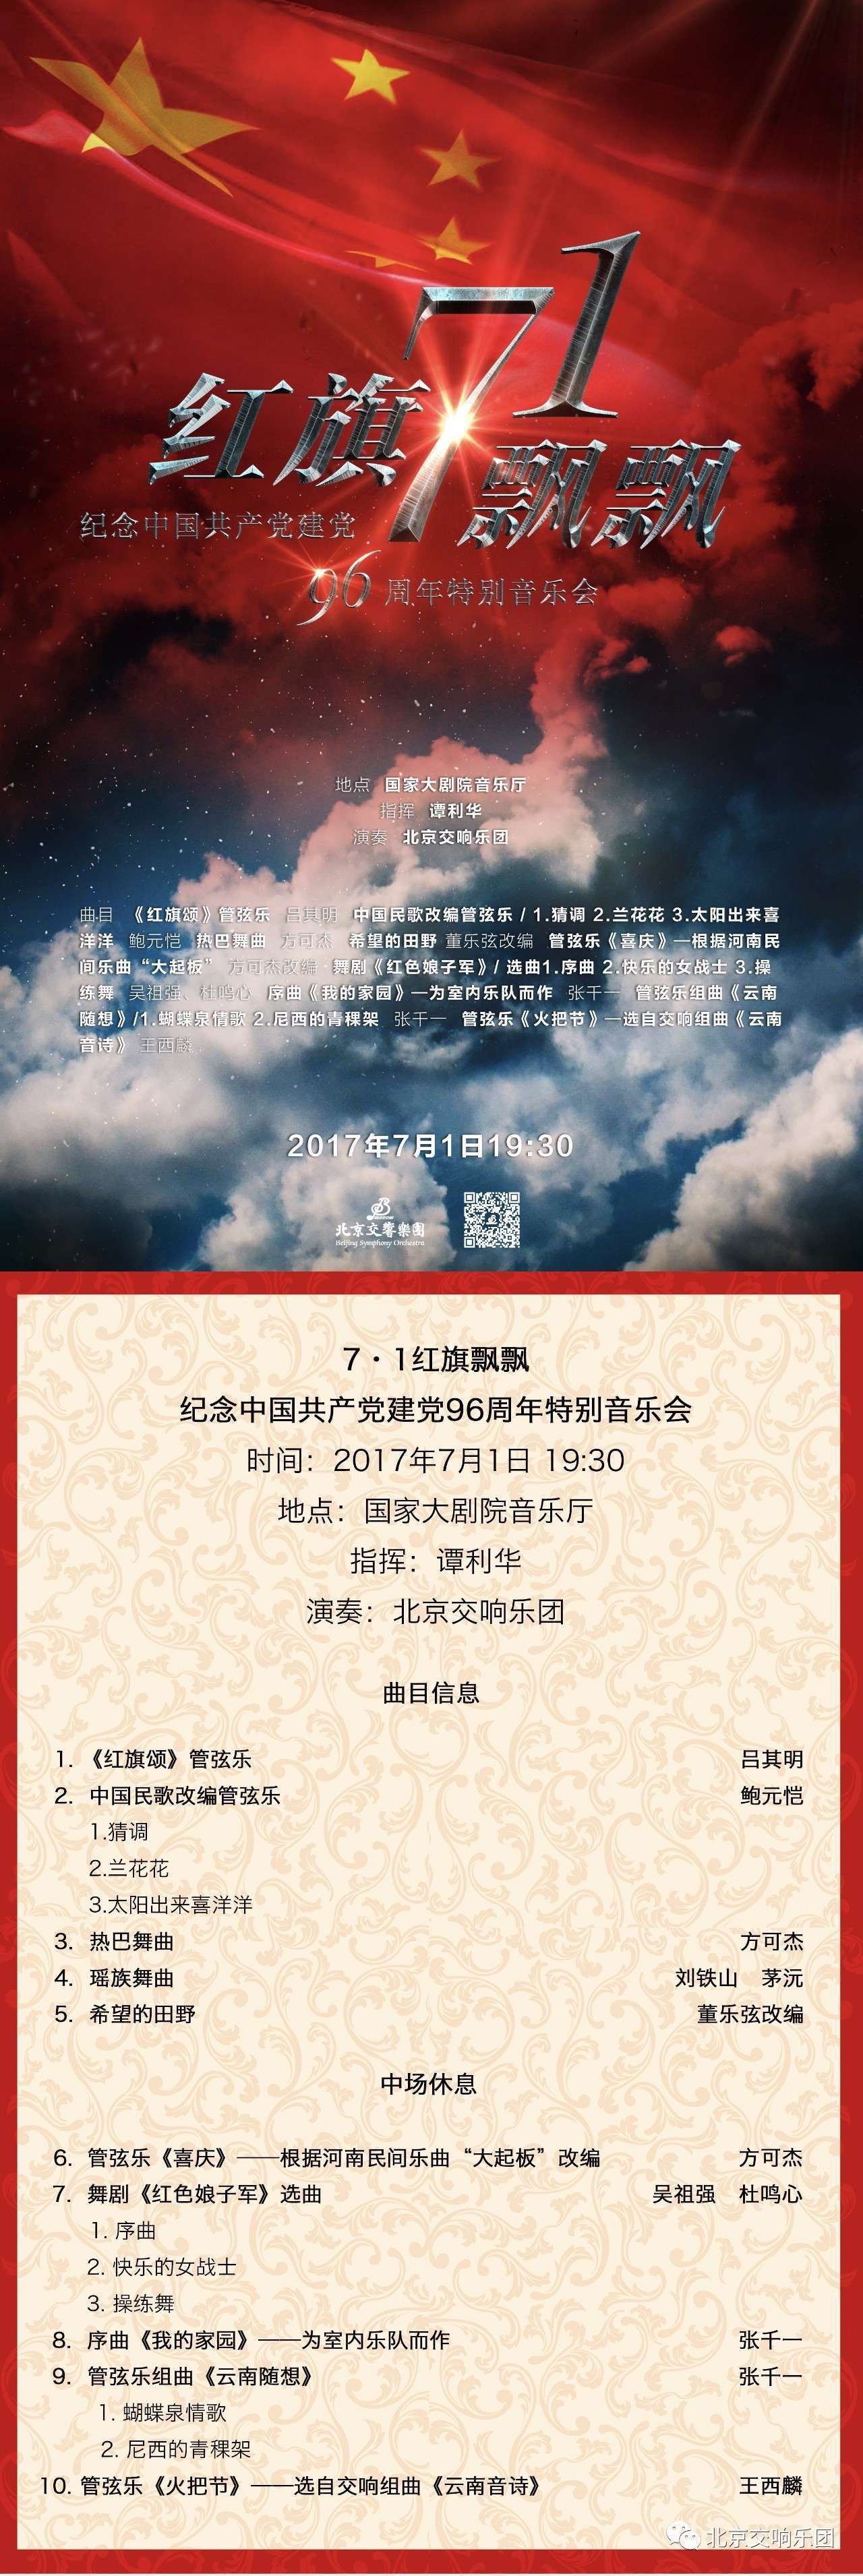 红旗飘飘——纪念中国共产党建党96周年特别音乐会